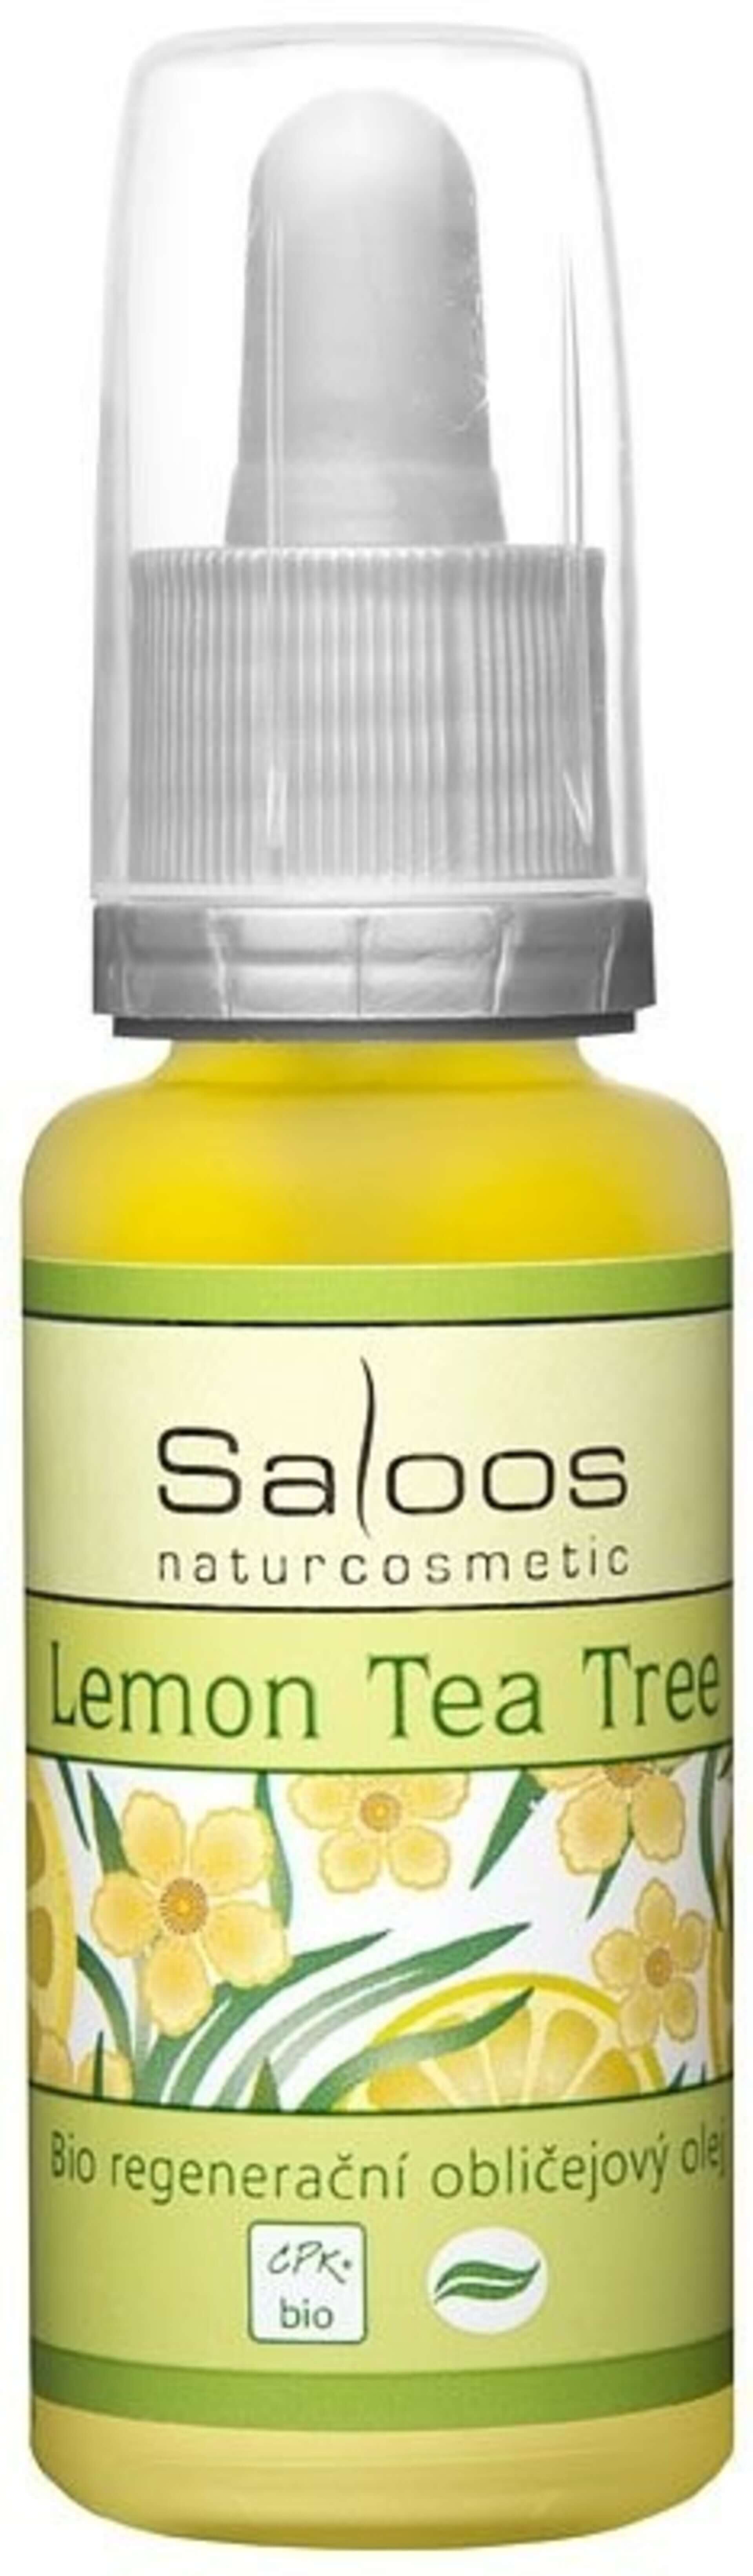 E-shop Saloos Bio regeneračný pleťový olej Lemon Tea Tree 20 ml